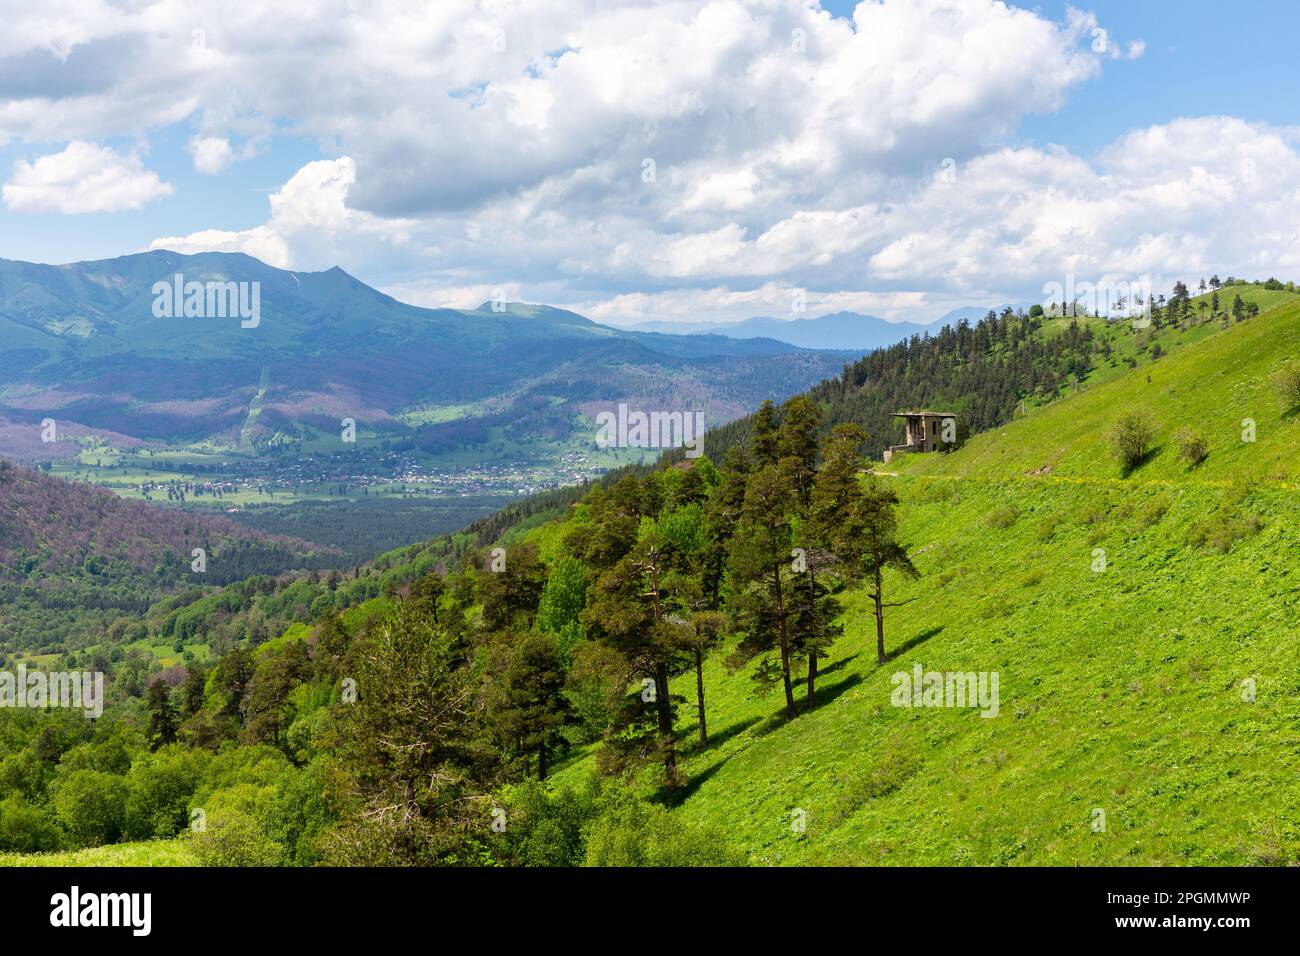 Landschaft der Trialeti (Kaukasus) Berge mit der M-20 Straße zum Tskhratskaro Pass und der alten Bakuriani Skilift, üppig grünen Bergen und Grasland Stockfoto